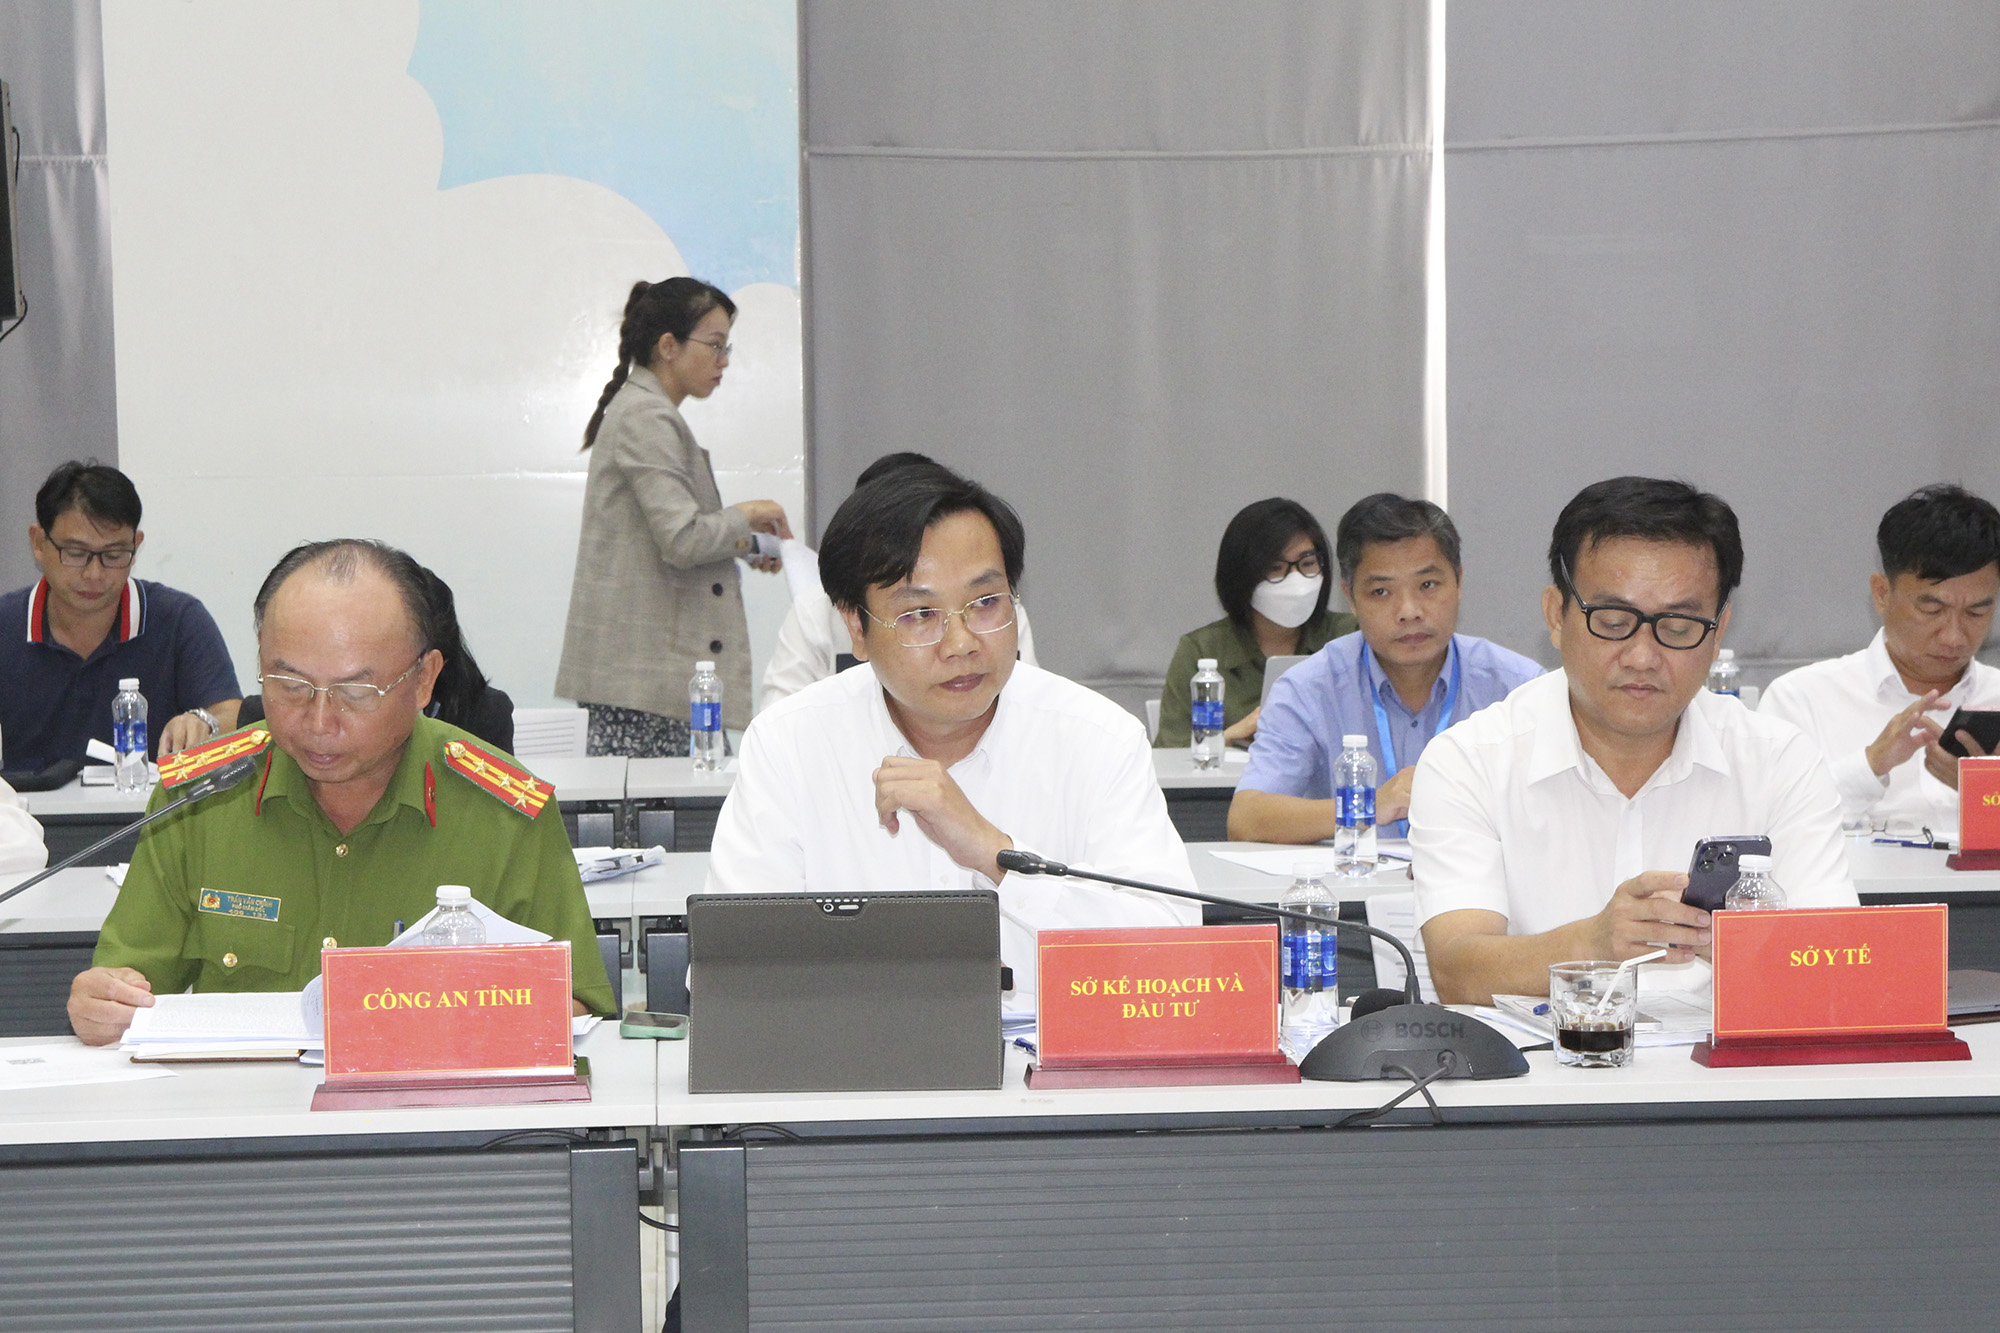 Đồng chí Nguyễn Thanh An – Phó Giám đốc Sở KH&ĐT tỉnh Bình Dương (ngồi giữa, hàng đầu) tại buổi họp báo (Ảnh: H.Hào).